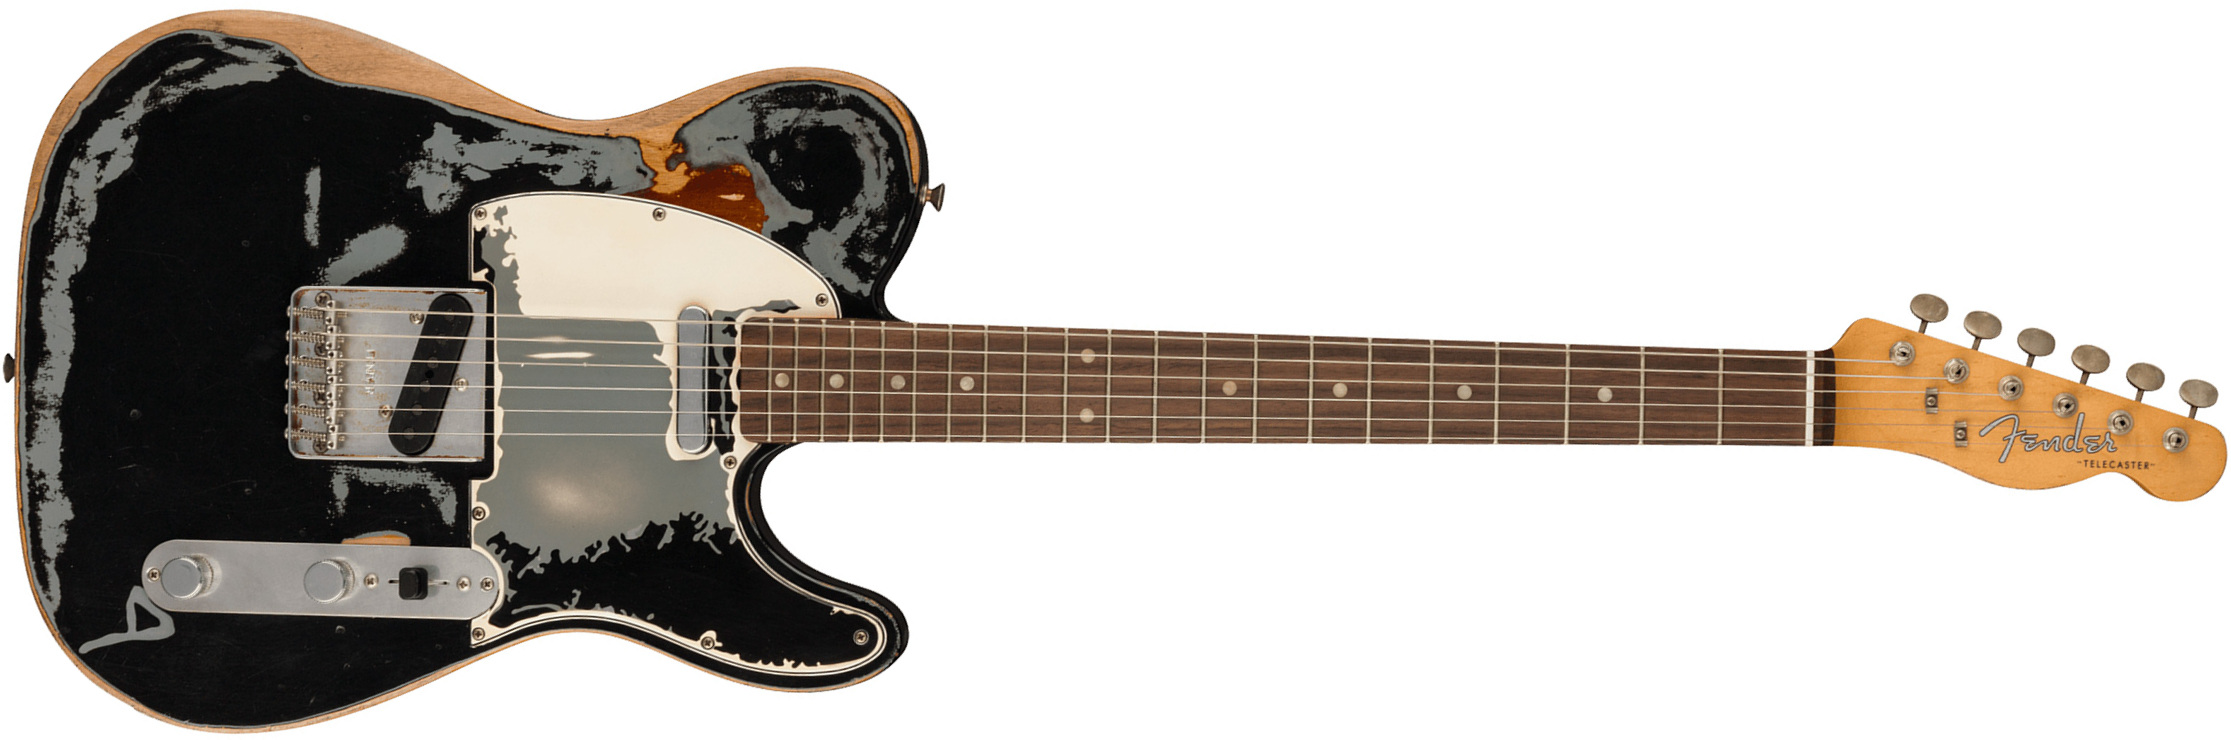 Fender Joe Strummer Tele Mex Signature 2s Ht Rw - Road Worn Black Over 3-color Sunburst - Guitare Électrique Forme Tel - Main picture